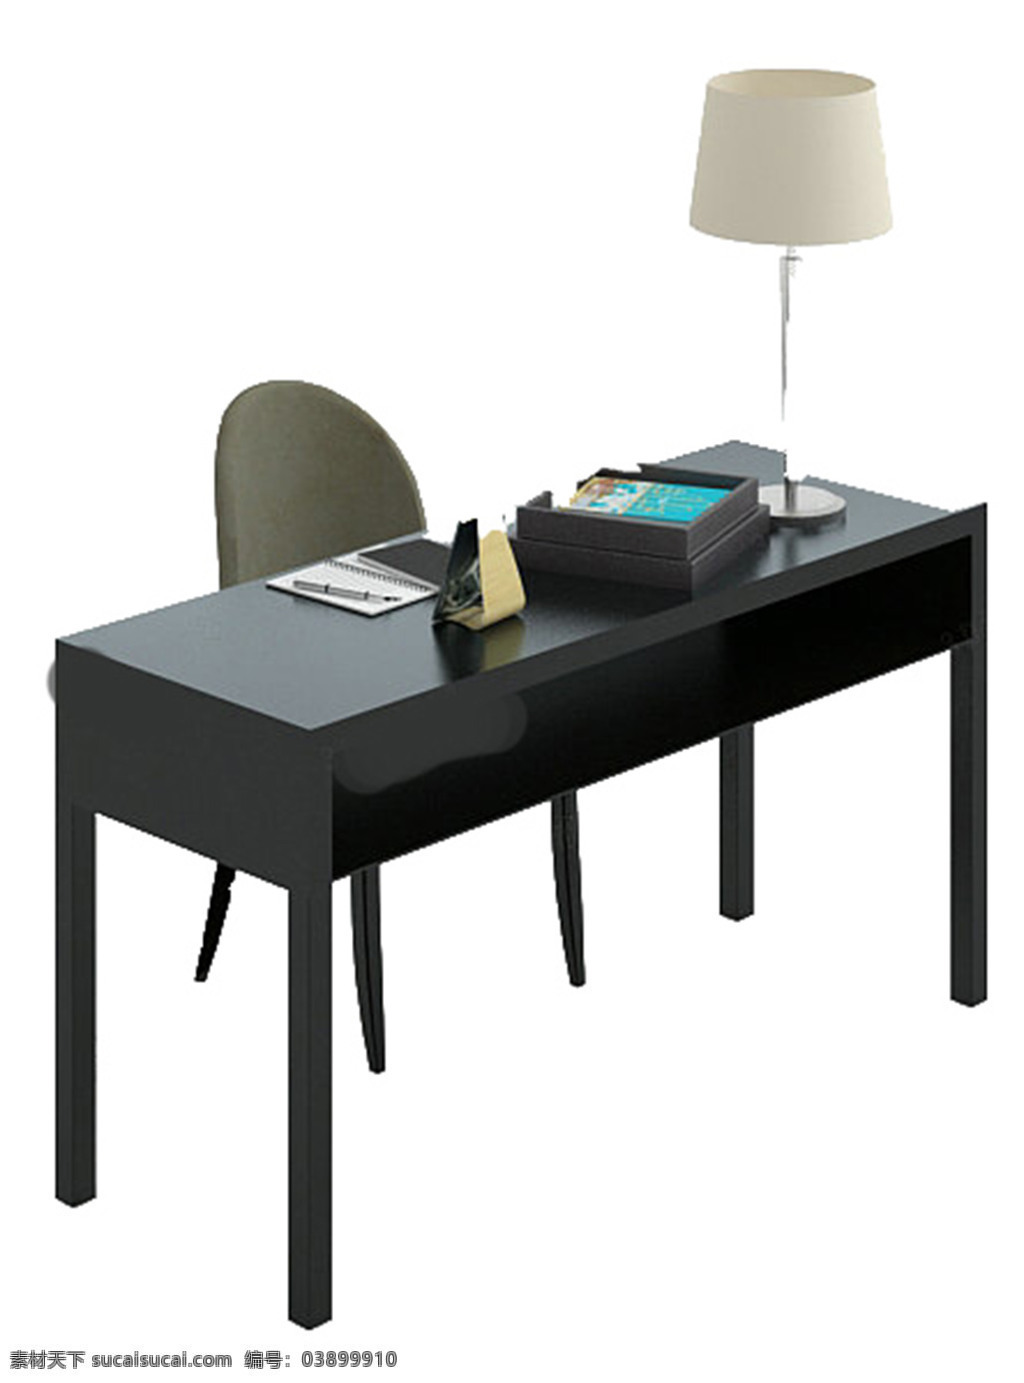 家居 书桌 模板下载 模型 3d 源文件 max 室内 装饰 办公桌 会议桌 白色